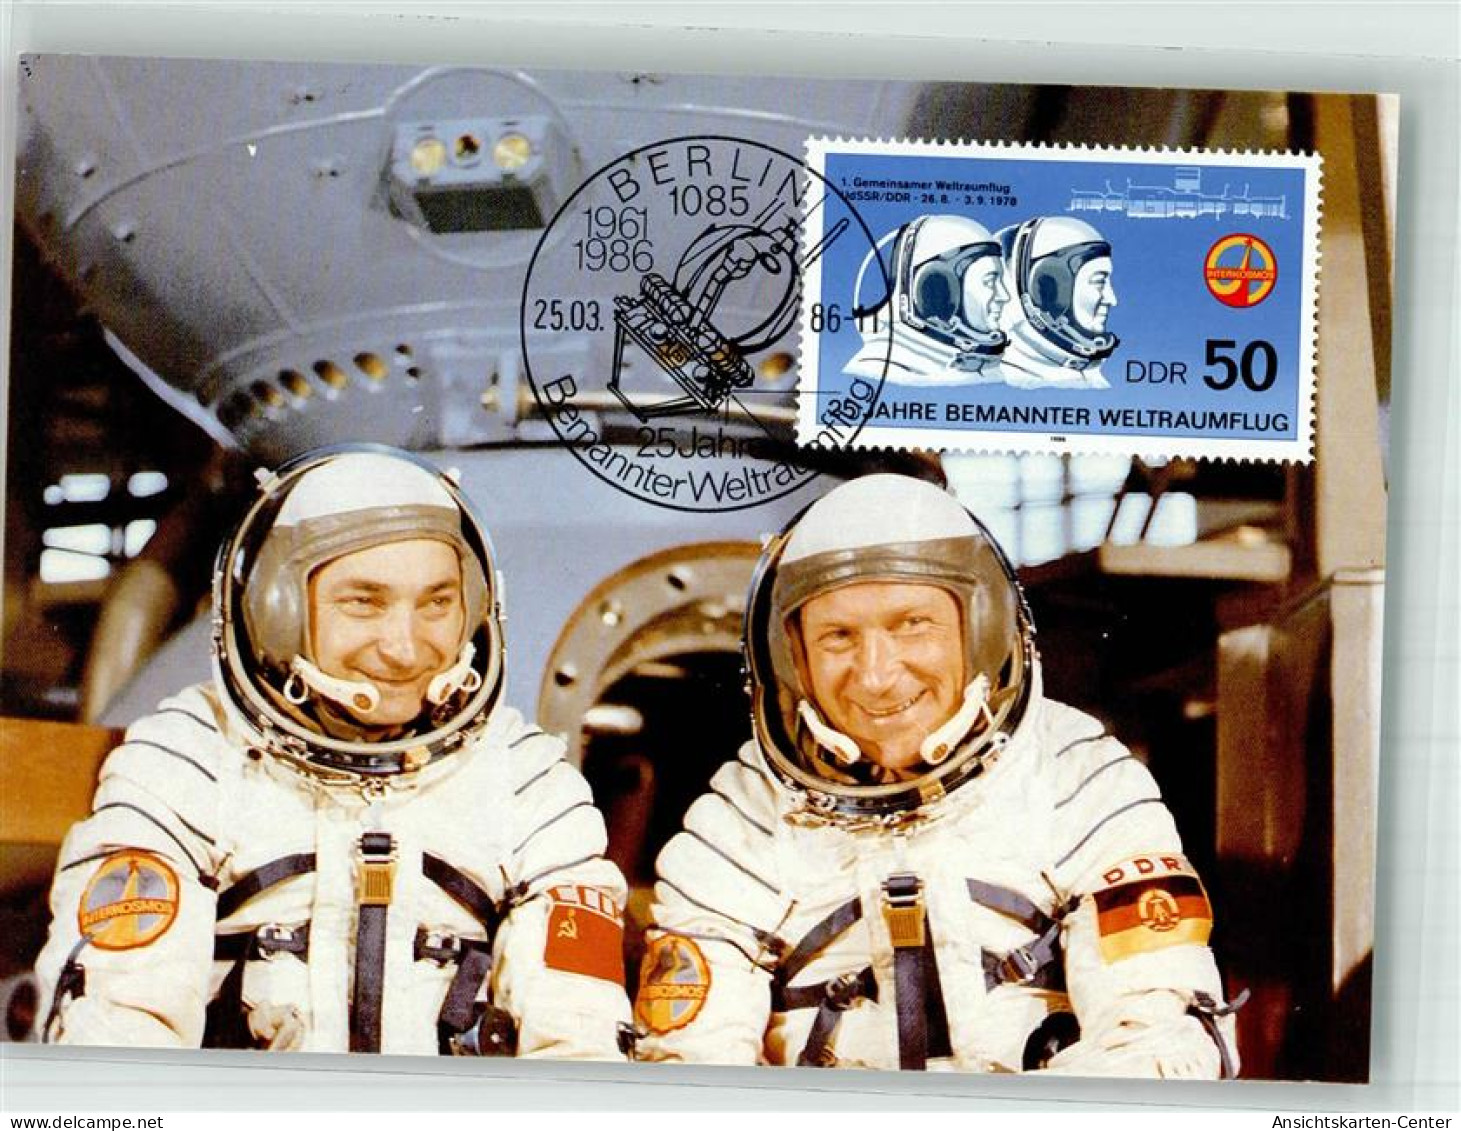 39867307 - Astronauten Waleri Bykowski Und Sigmund Jaehn 1 Gemeinsamer Weltraumflug 1978 Sondermarke Sonderstempel - Space